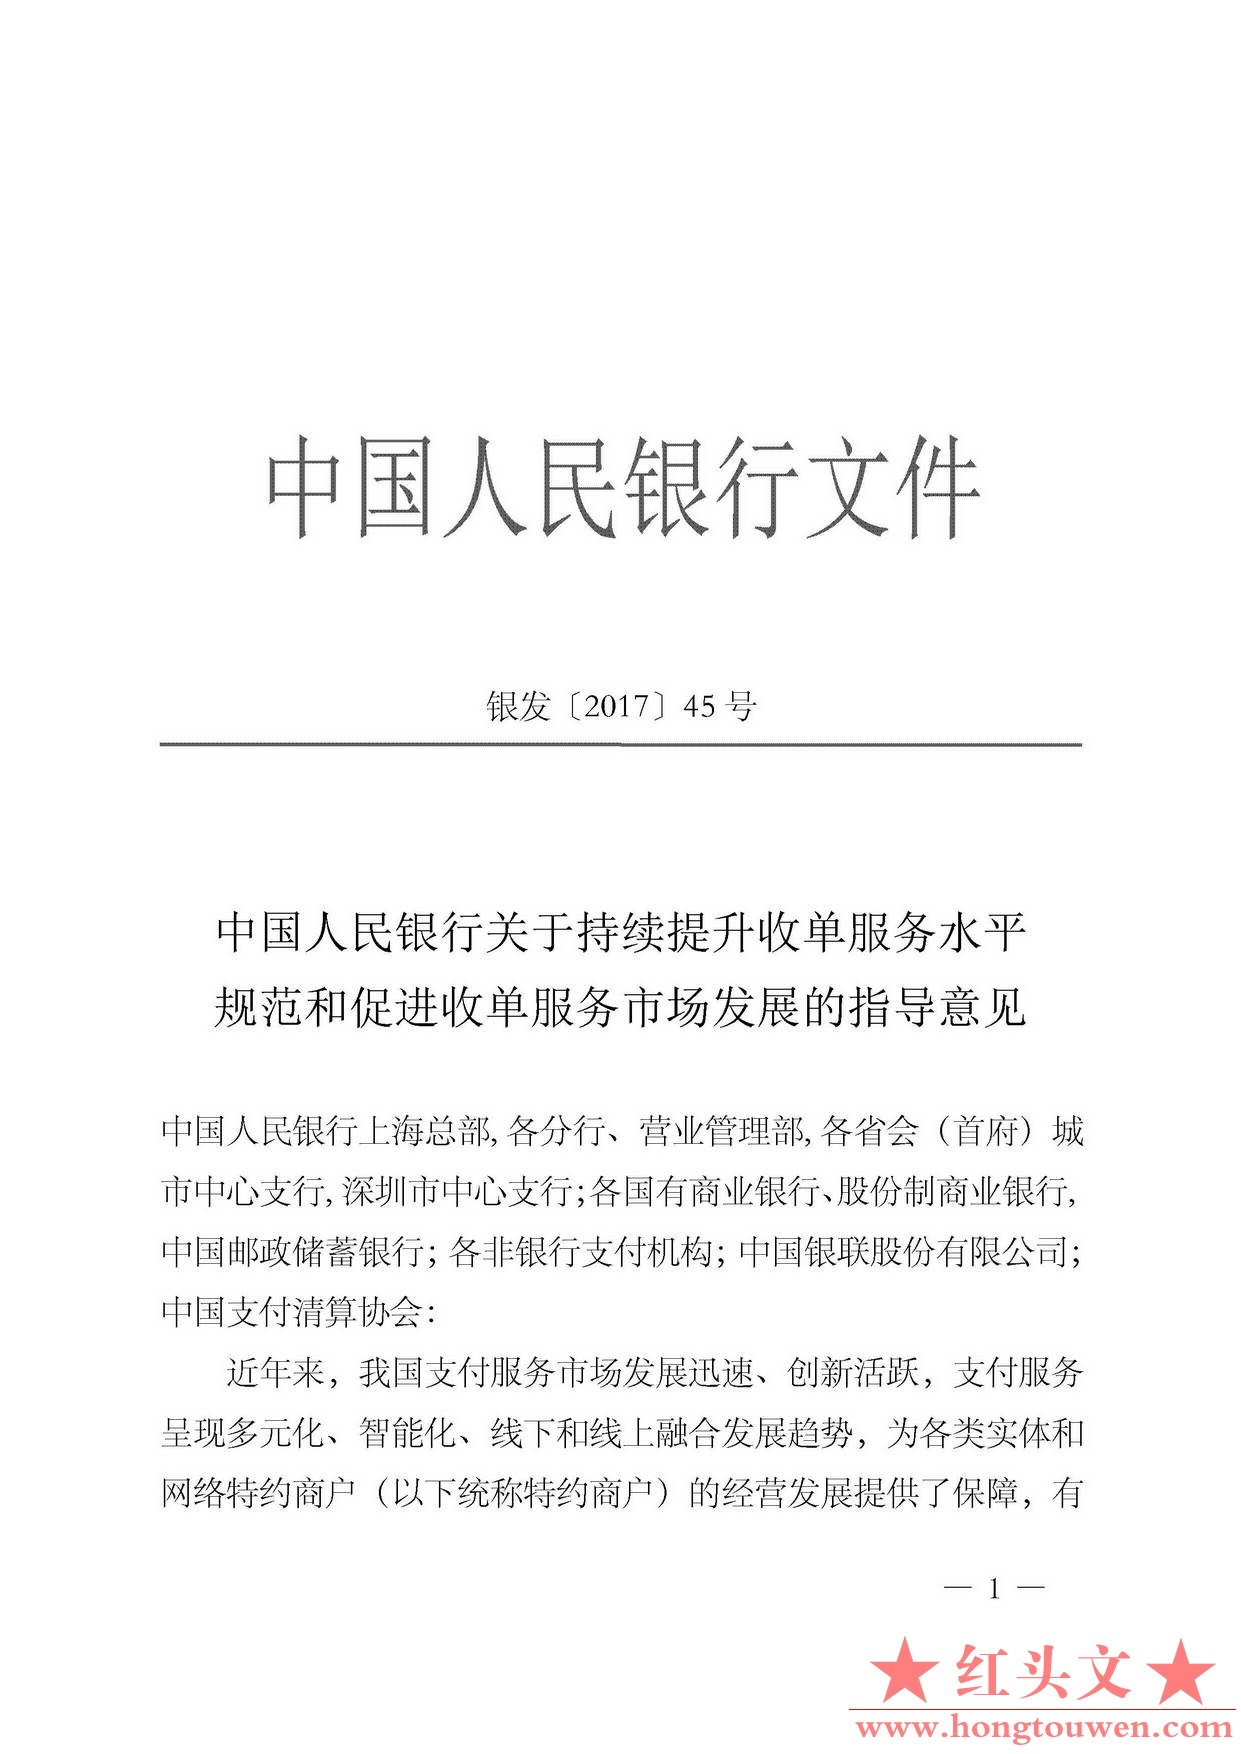 银发[2017]45号-中国人民银行关于继续提升收单服务水平规范和促进收单服务市场发展的.jpg